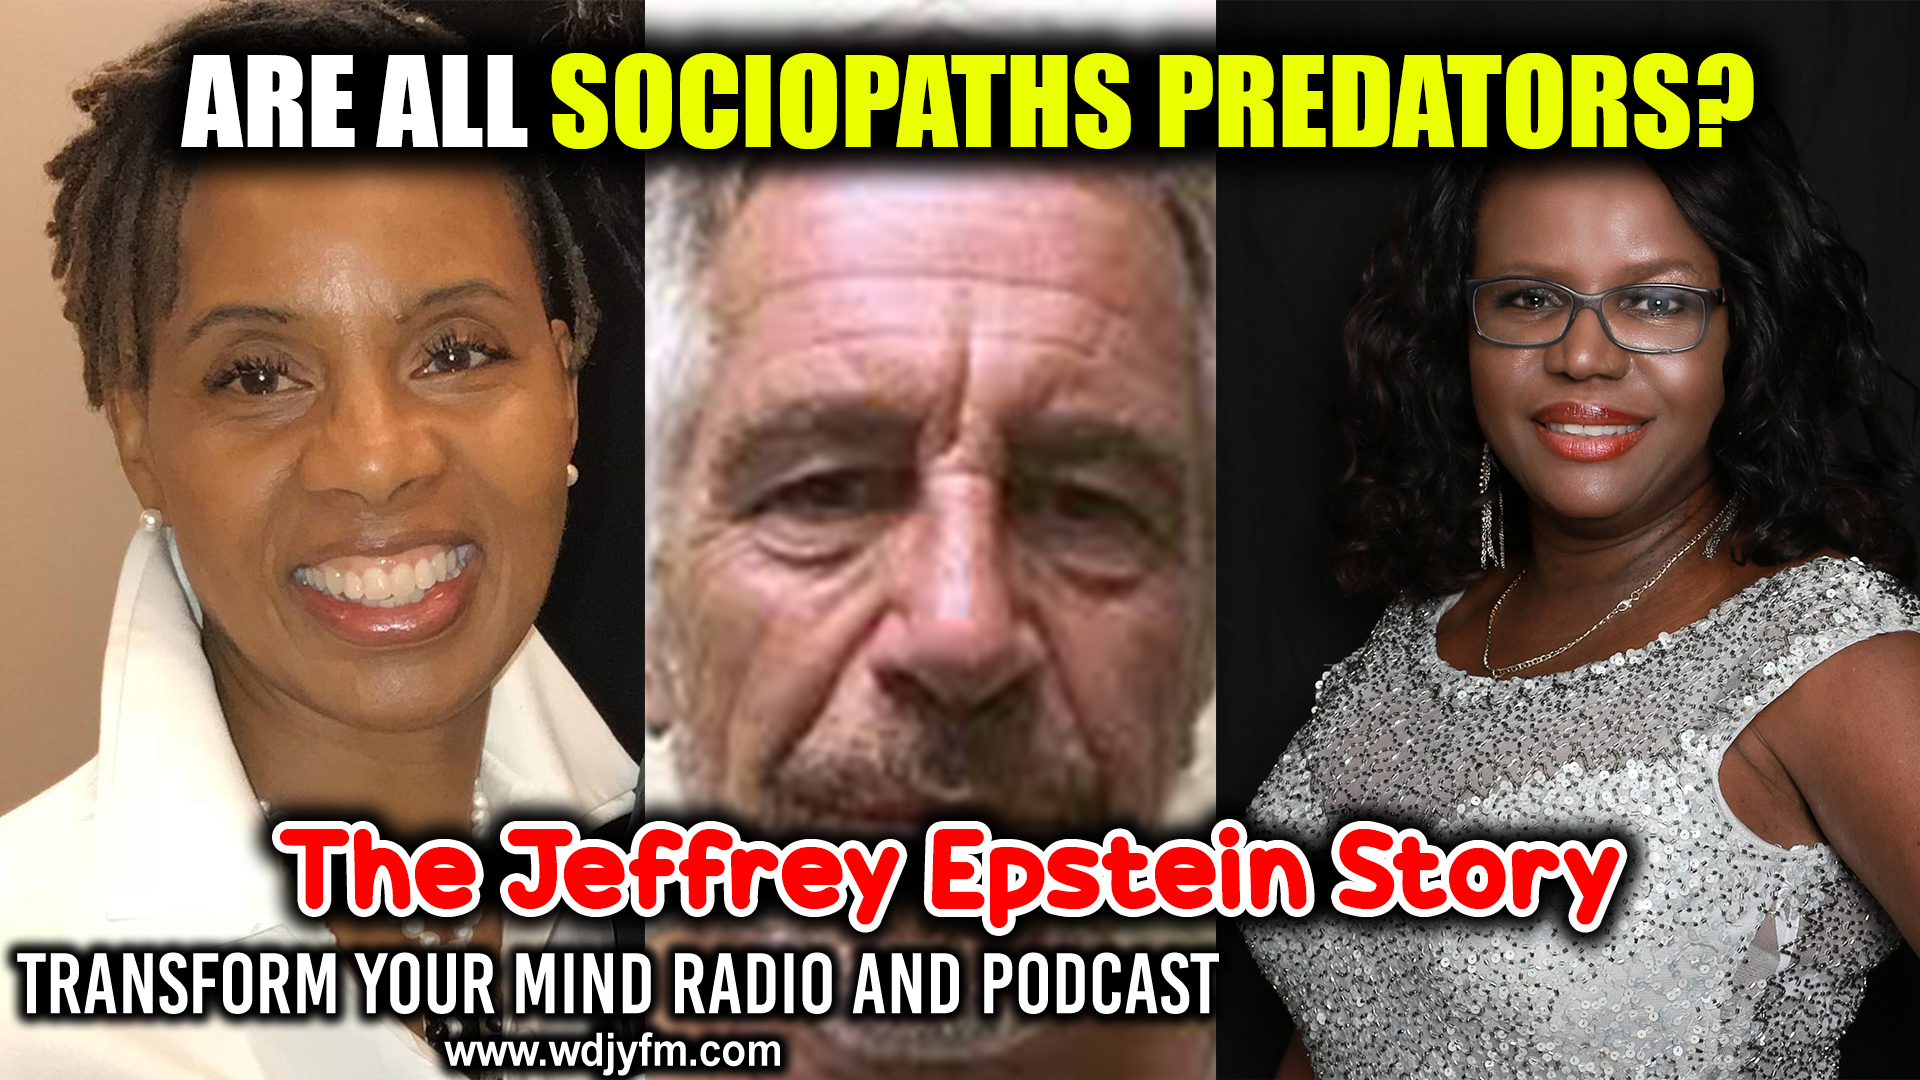 Sociopaths like Jeffrey Epstein